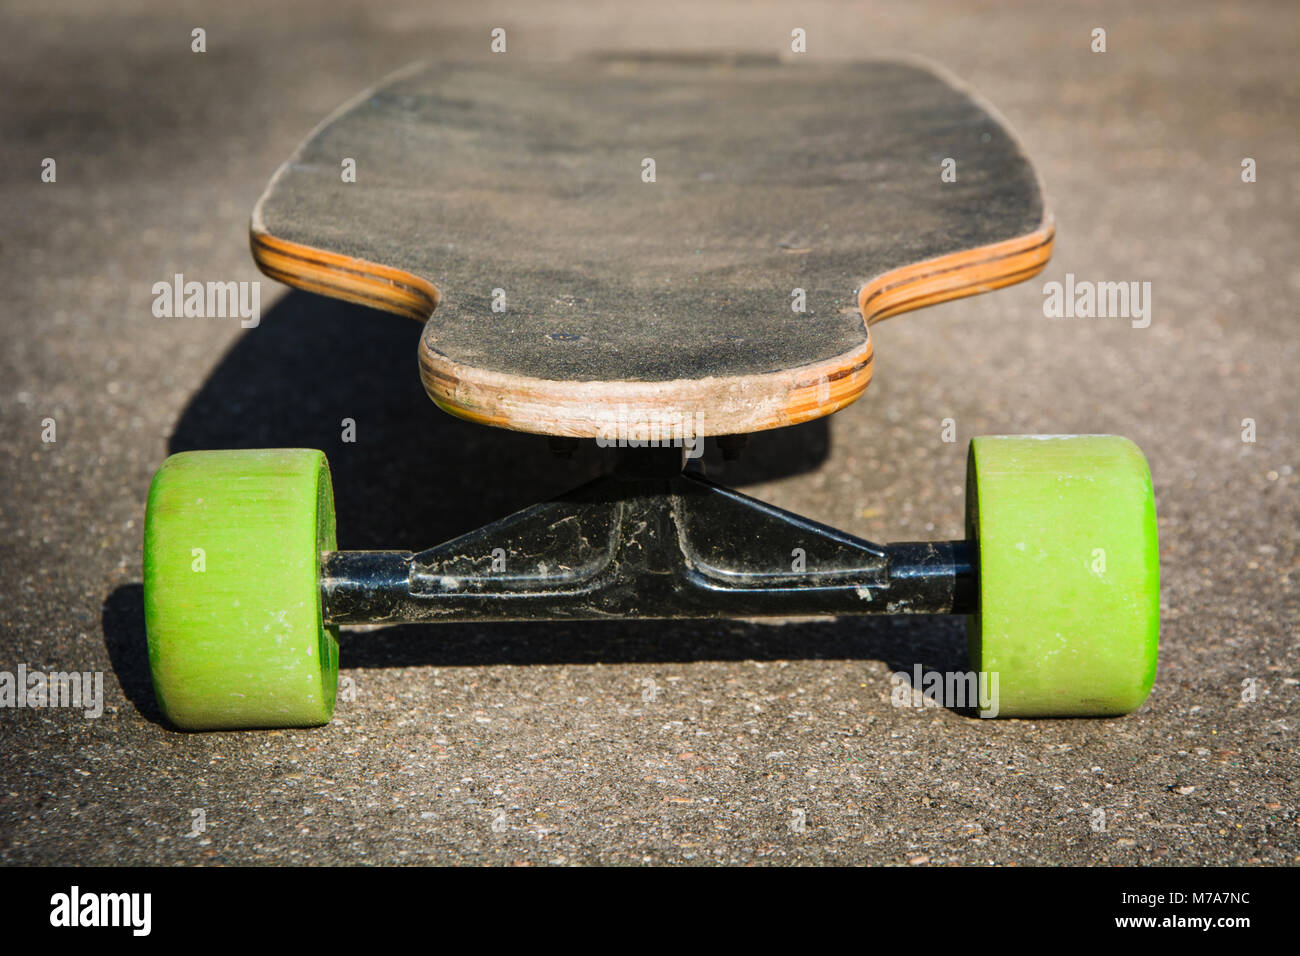 Alte gebrauchte Longboard auf dem Boden. Schwarz skateboard auf Asphalt.  Close Up Stockfotografie - Alamy